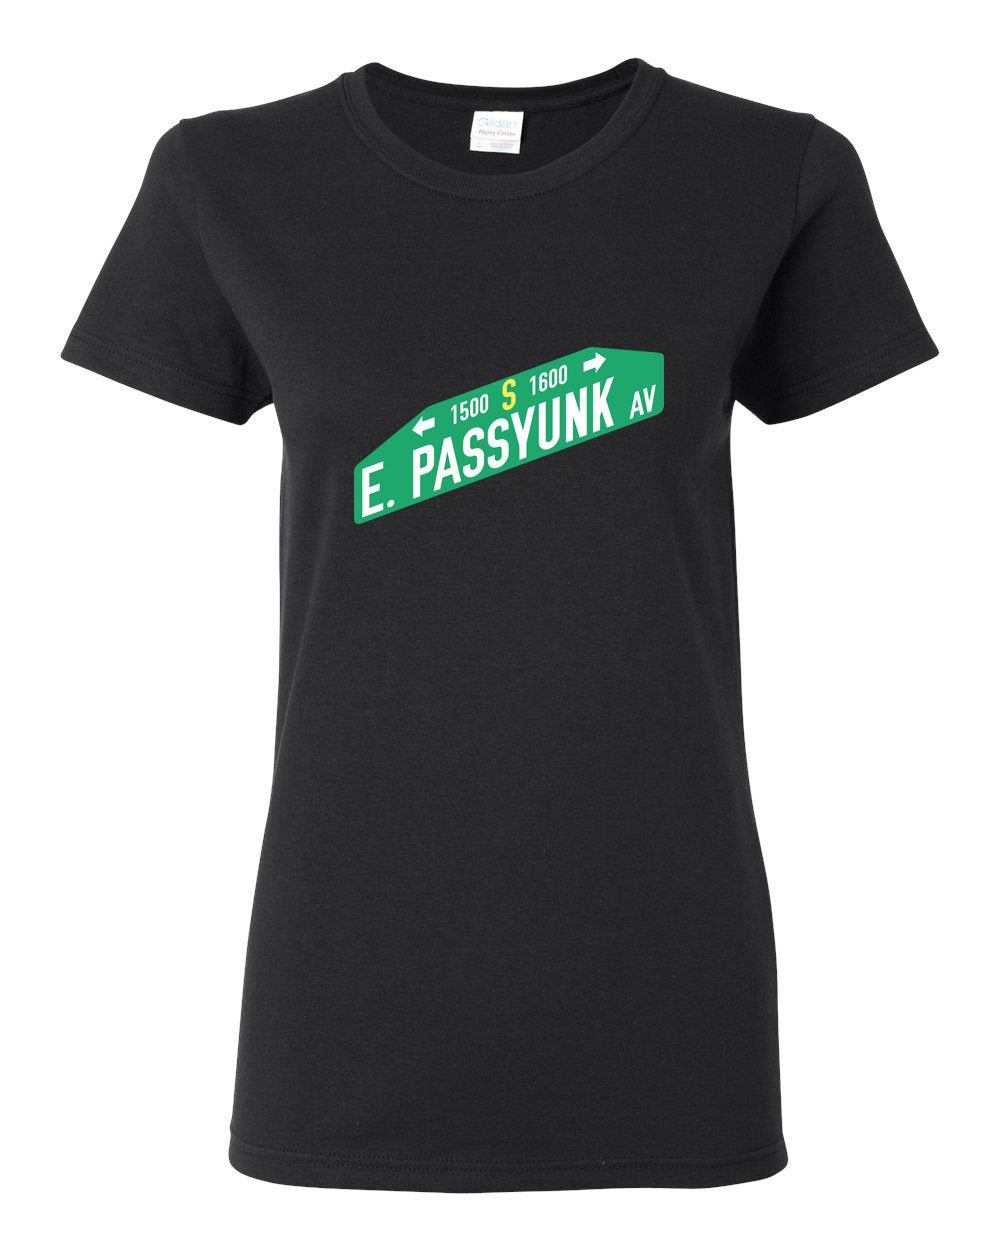 East Passyunk LADIES Missy-Fit T-Shirt